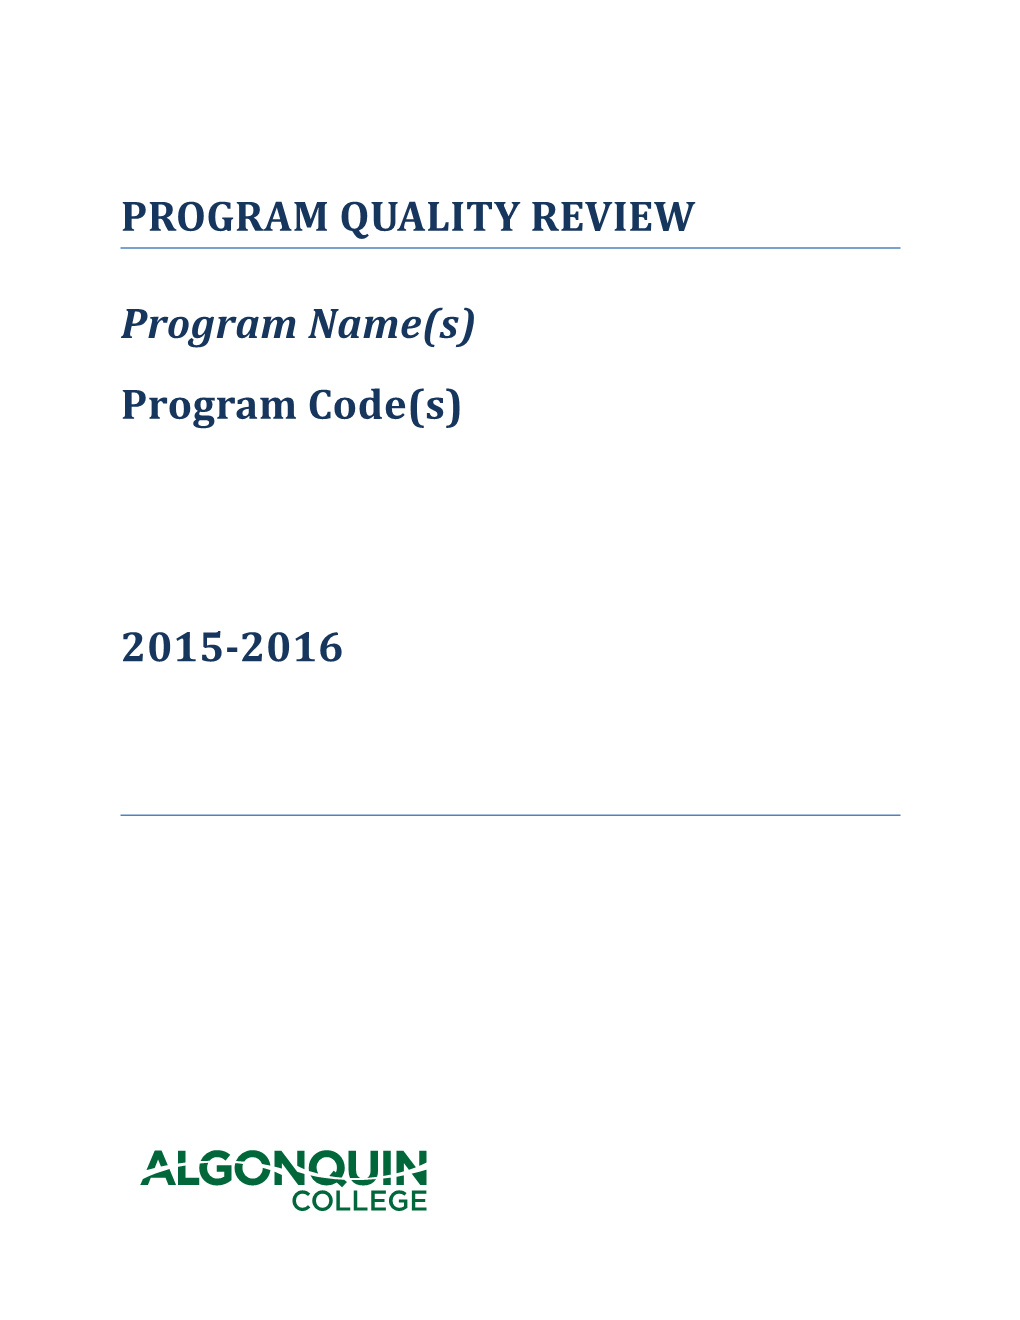 Program Quality Review